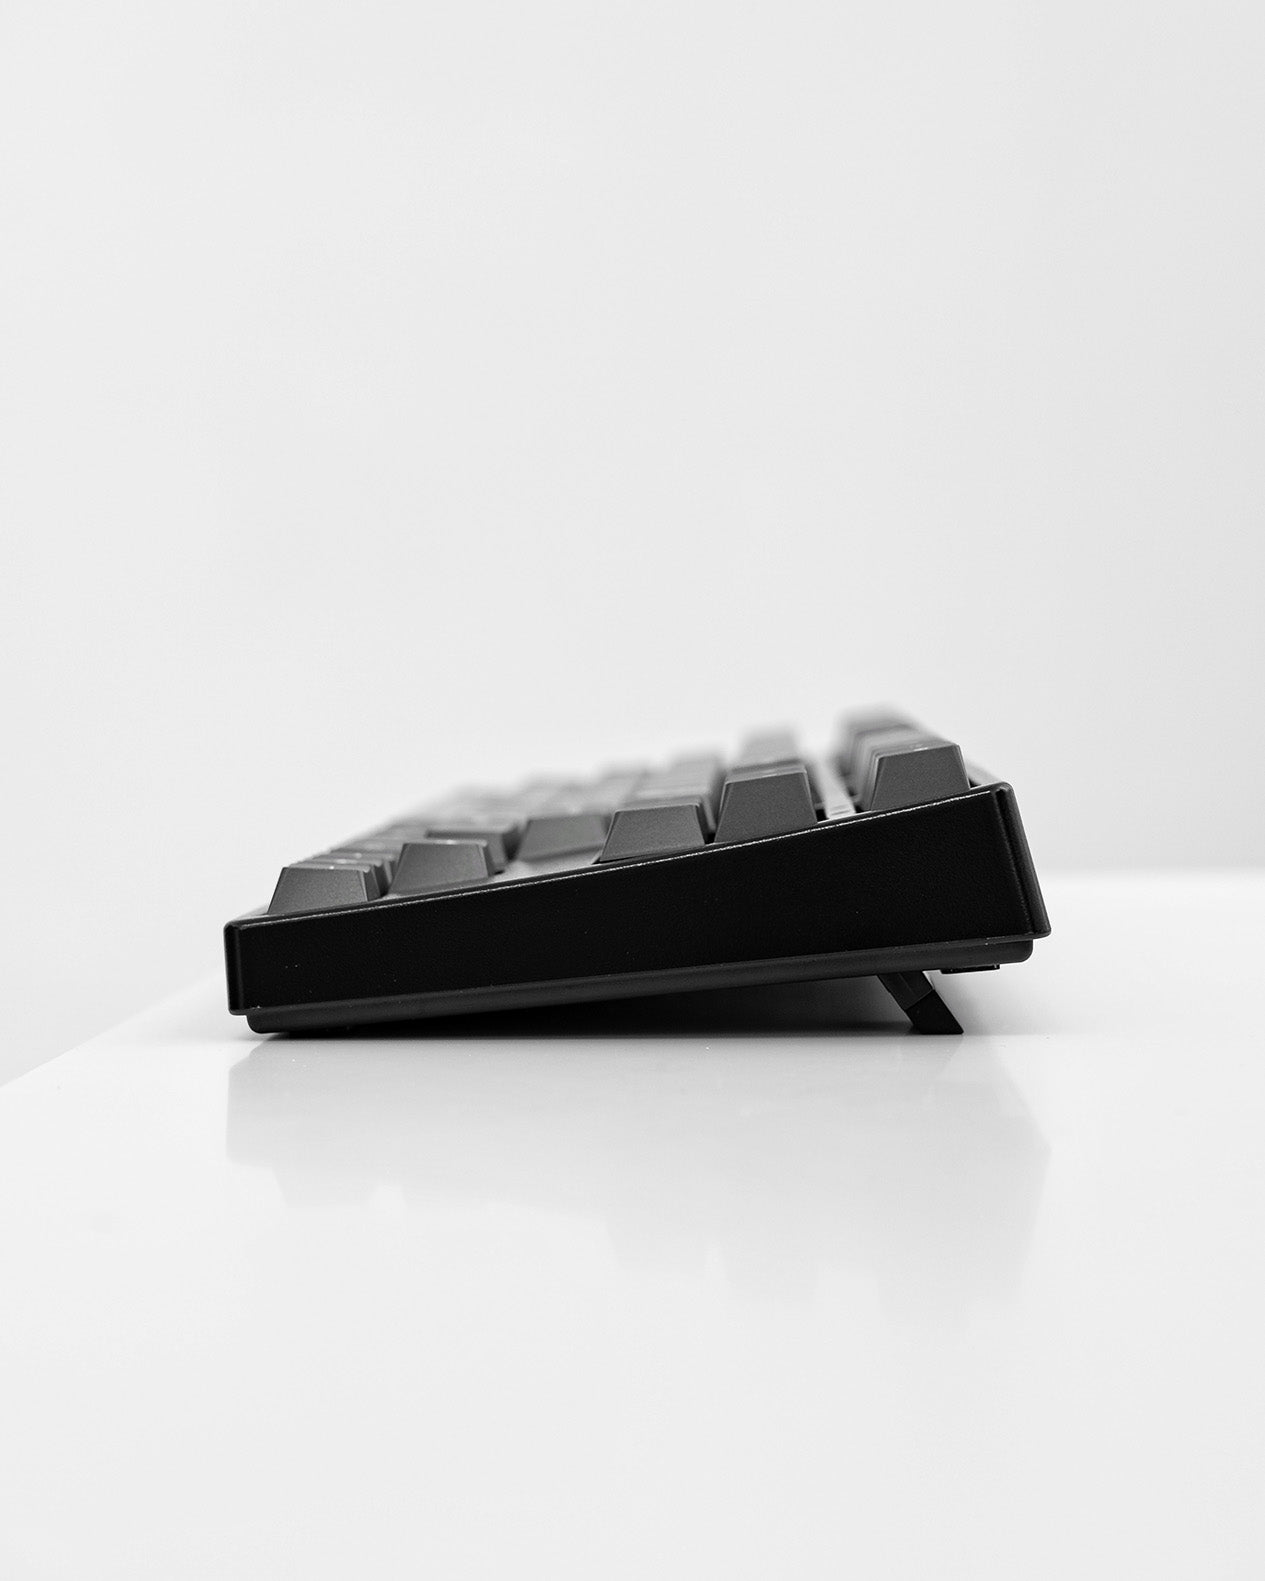 NOIR N2 Pro Grey - TKL Wireless Mechanical Keyboard